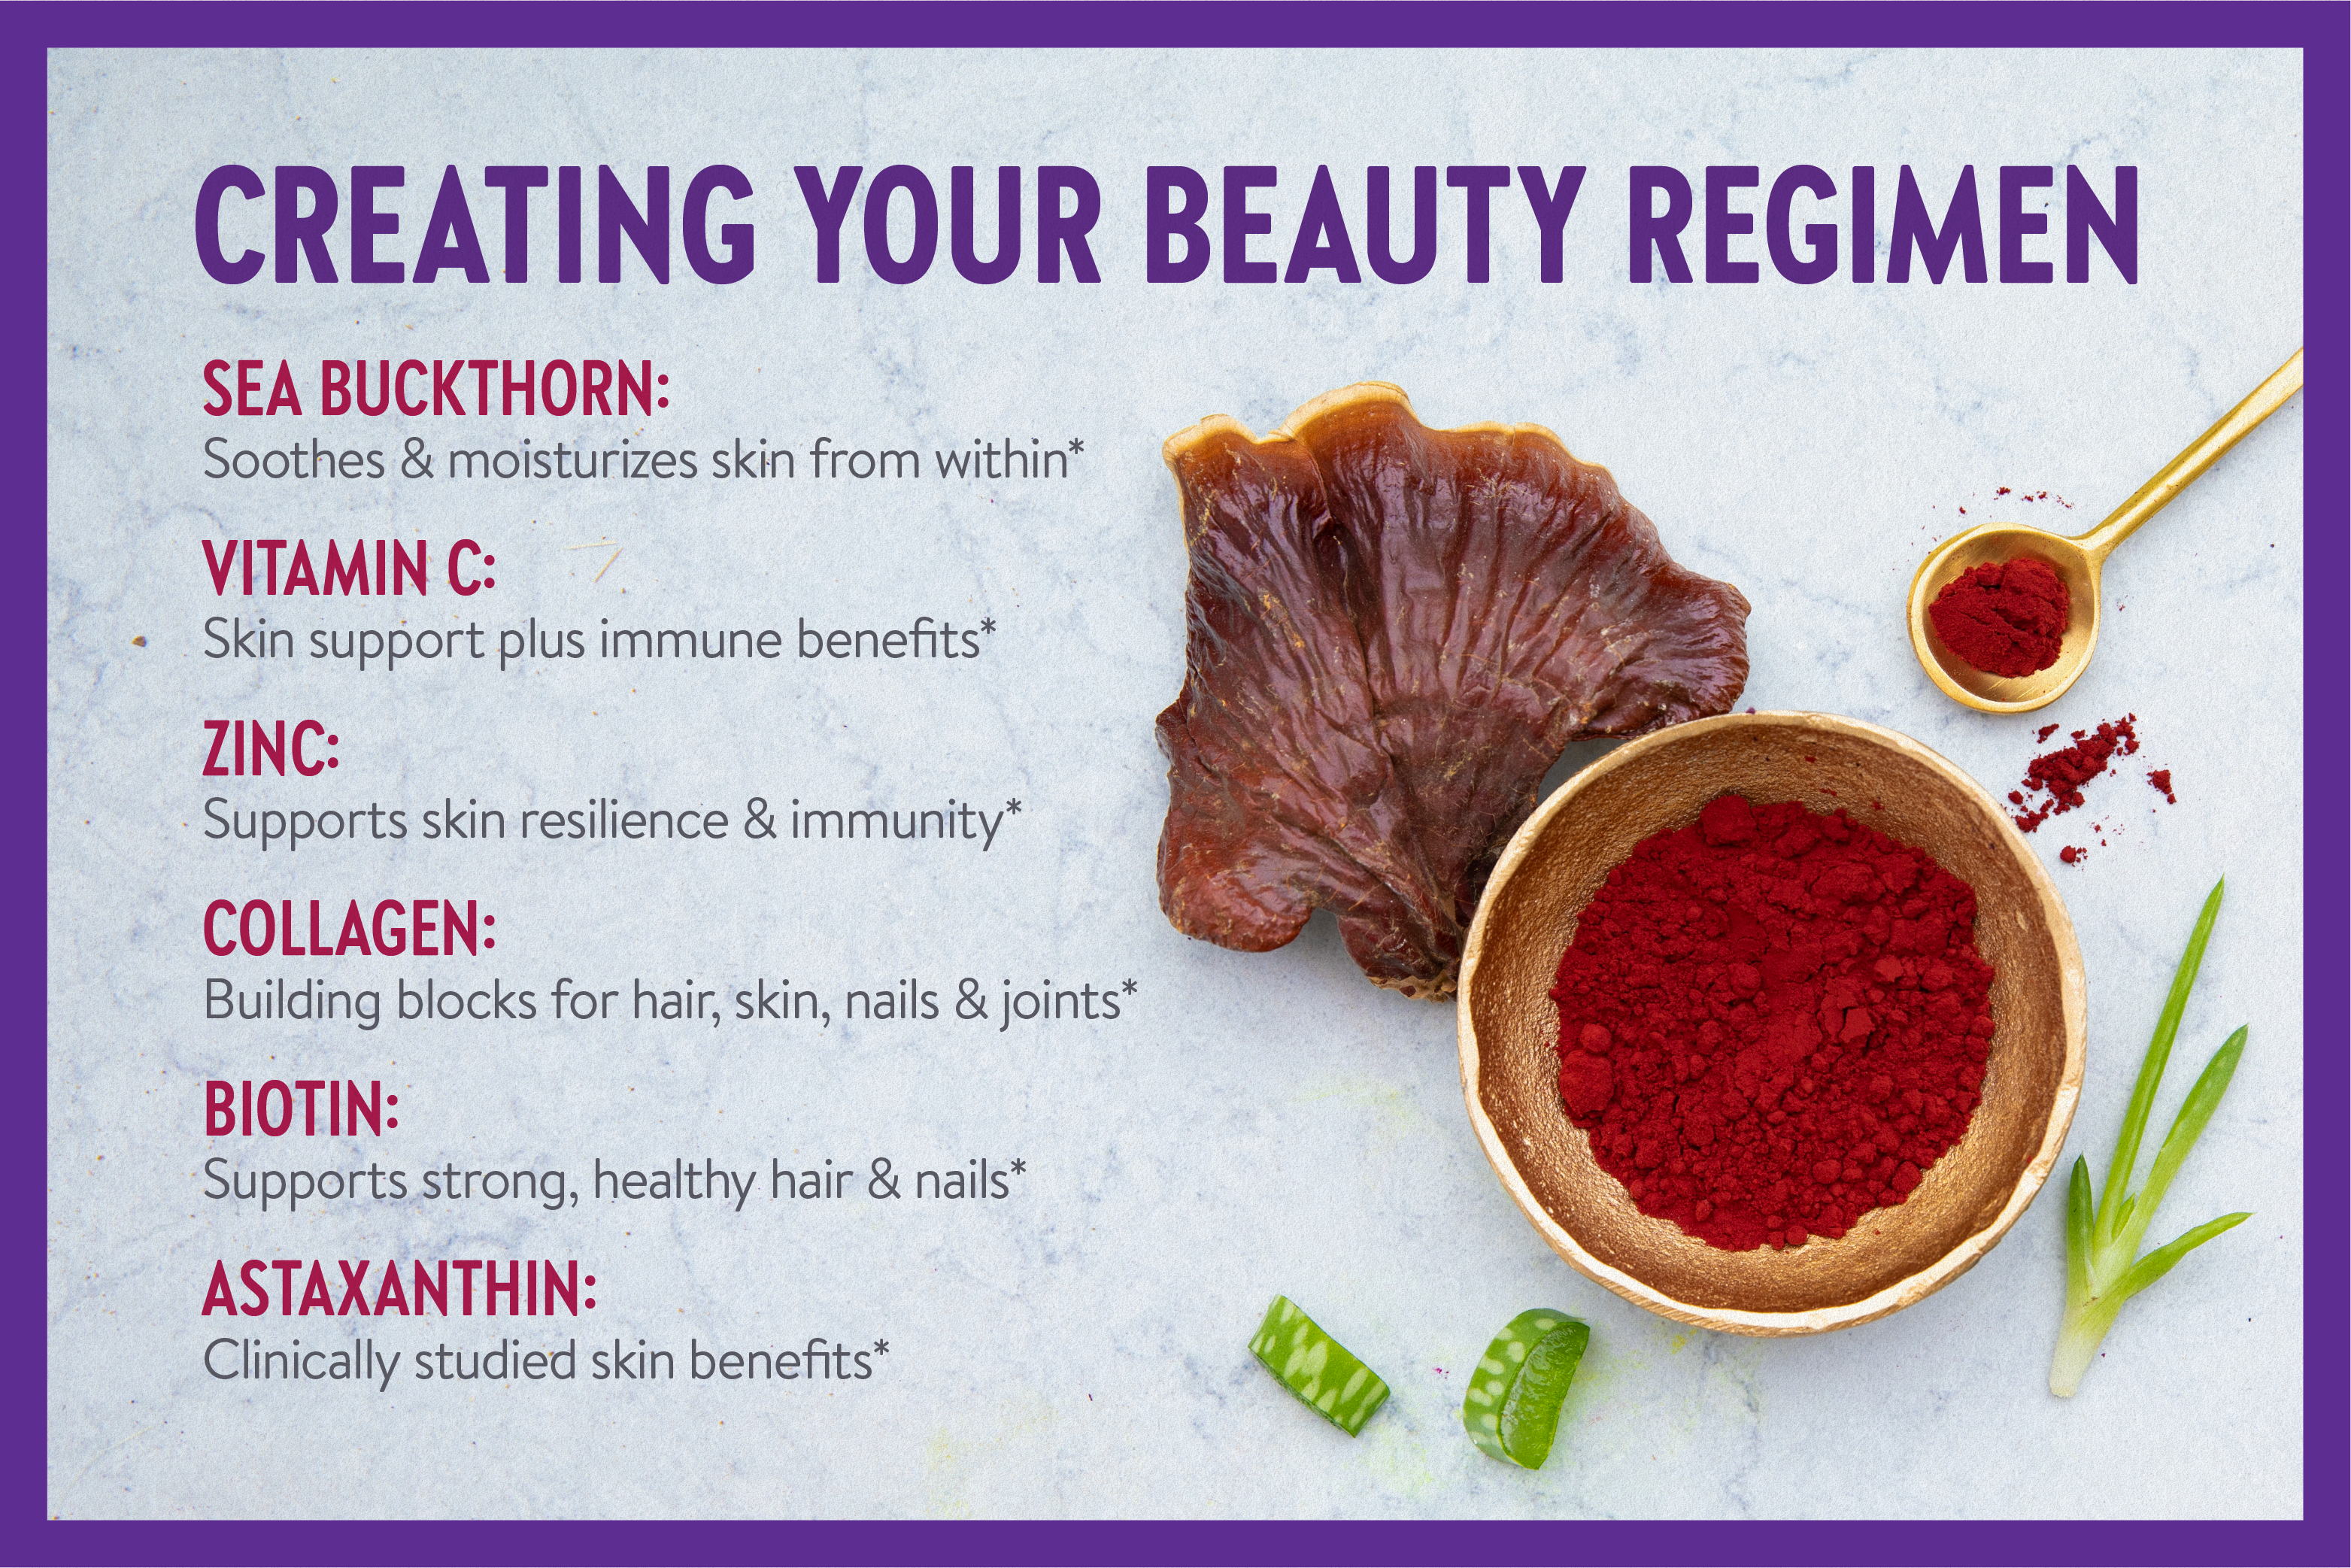 Creating your Beauty regimen